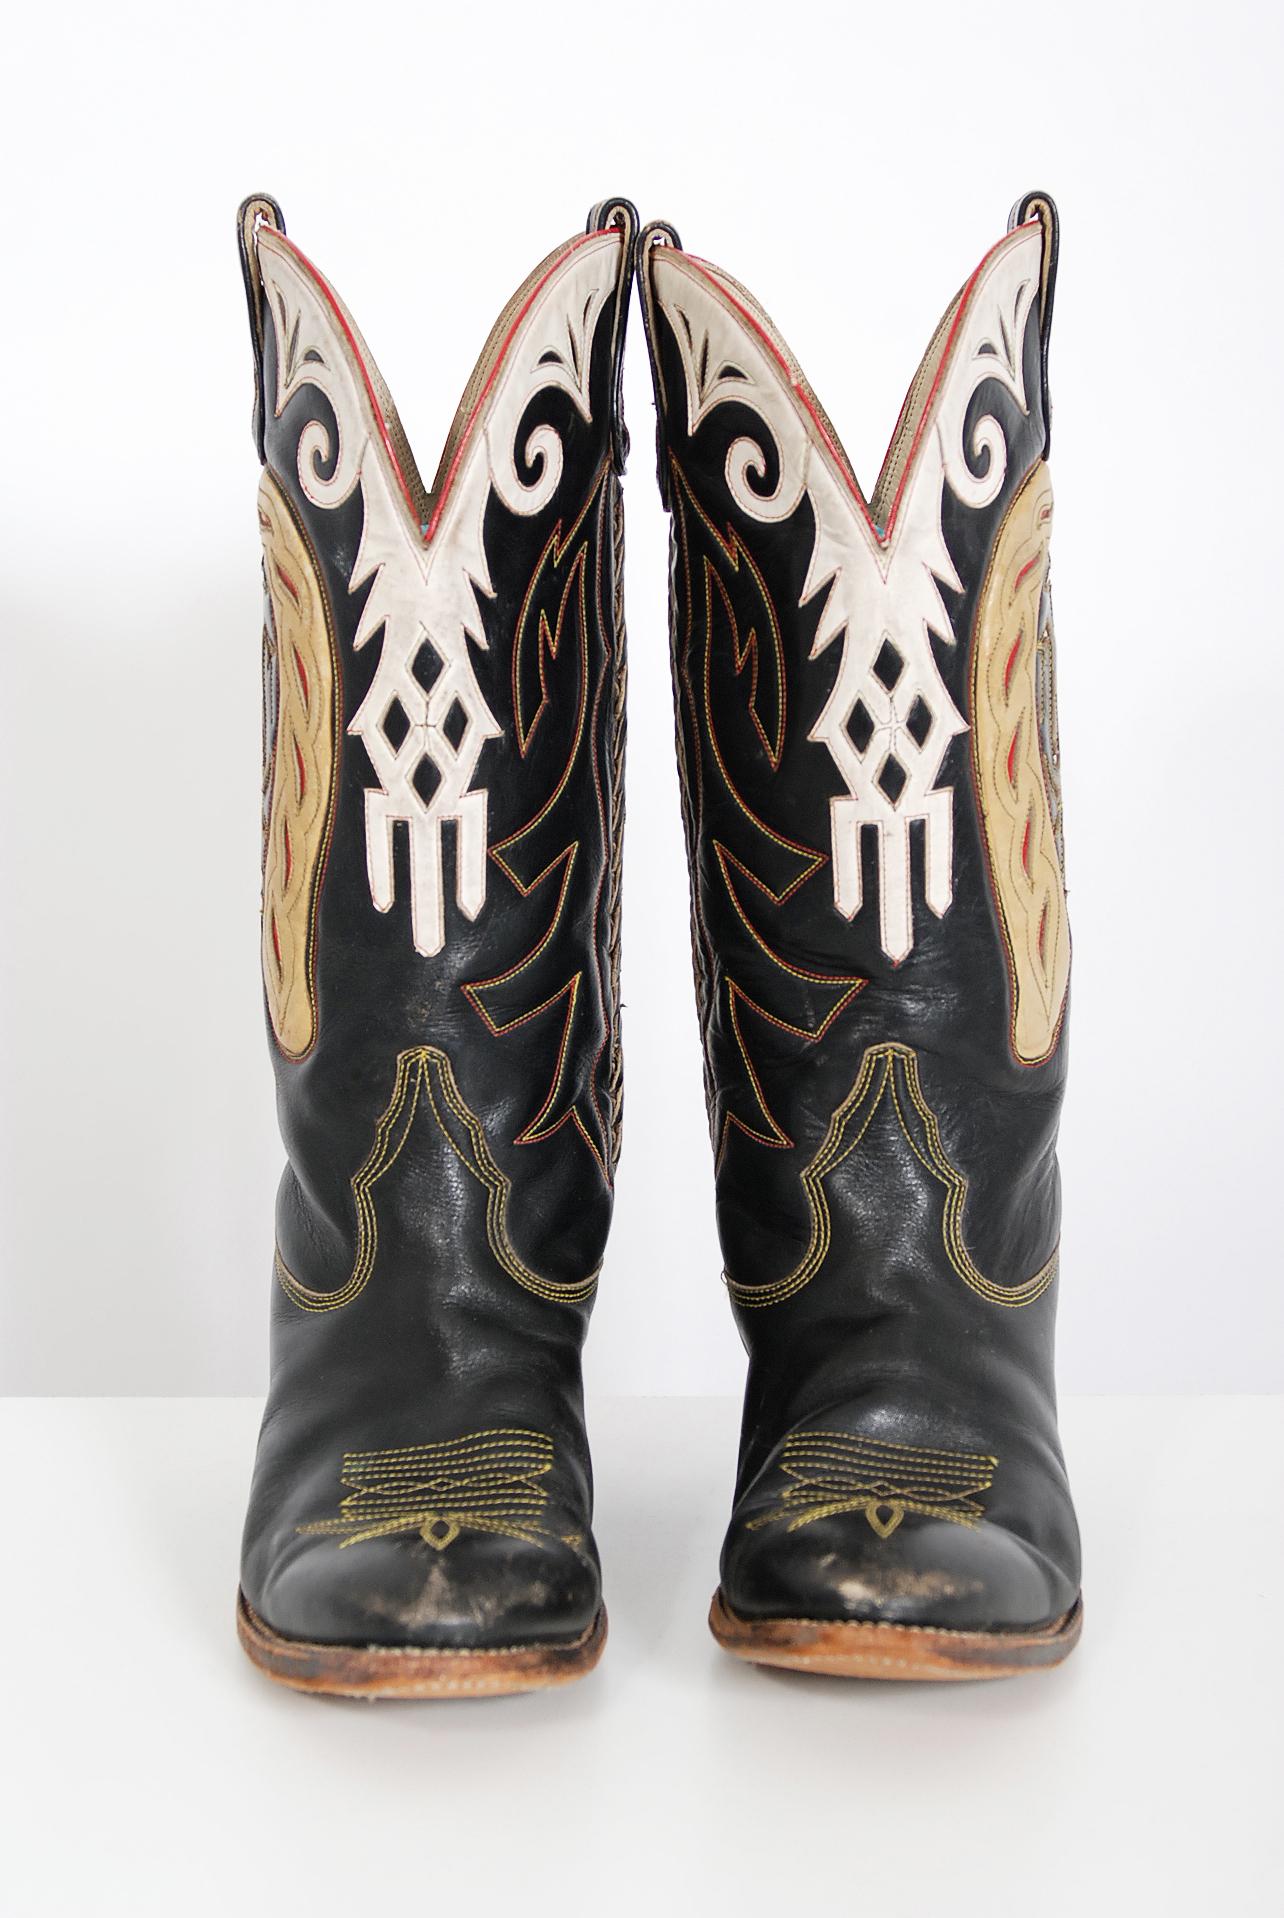 Size 6 Vintage Don Quijote Boots Schoenen damesschoenen Laarzen 